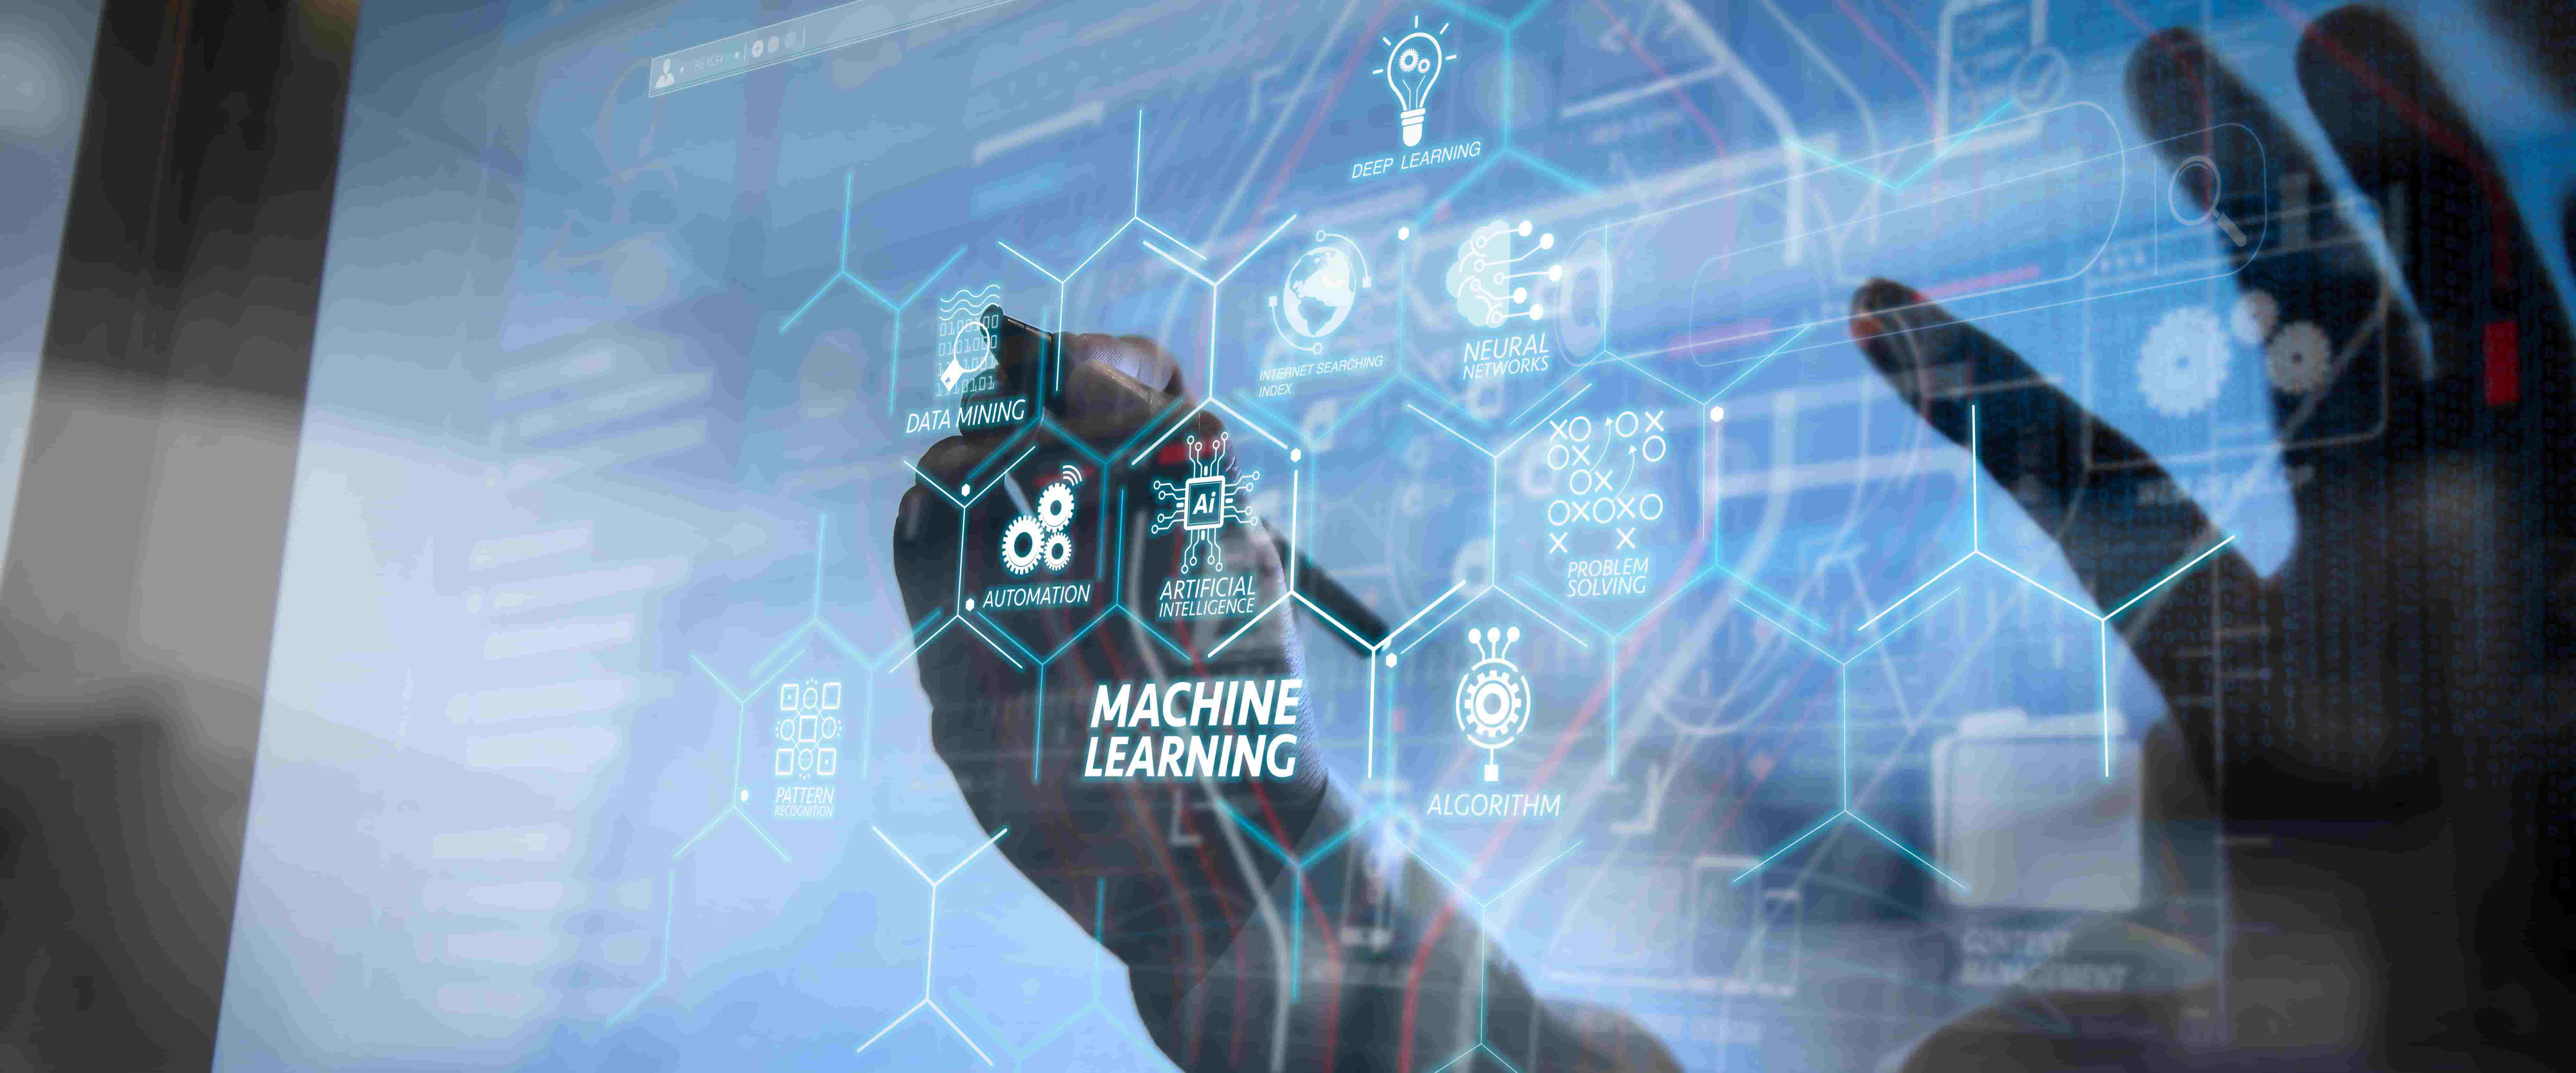 图片展示了一只手触碰带有各种机器学习和人工智能术语的虚拟界面，如算法、大数据等，体现了高科技感。